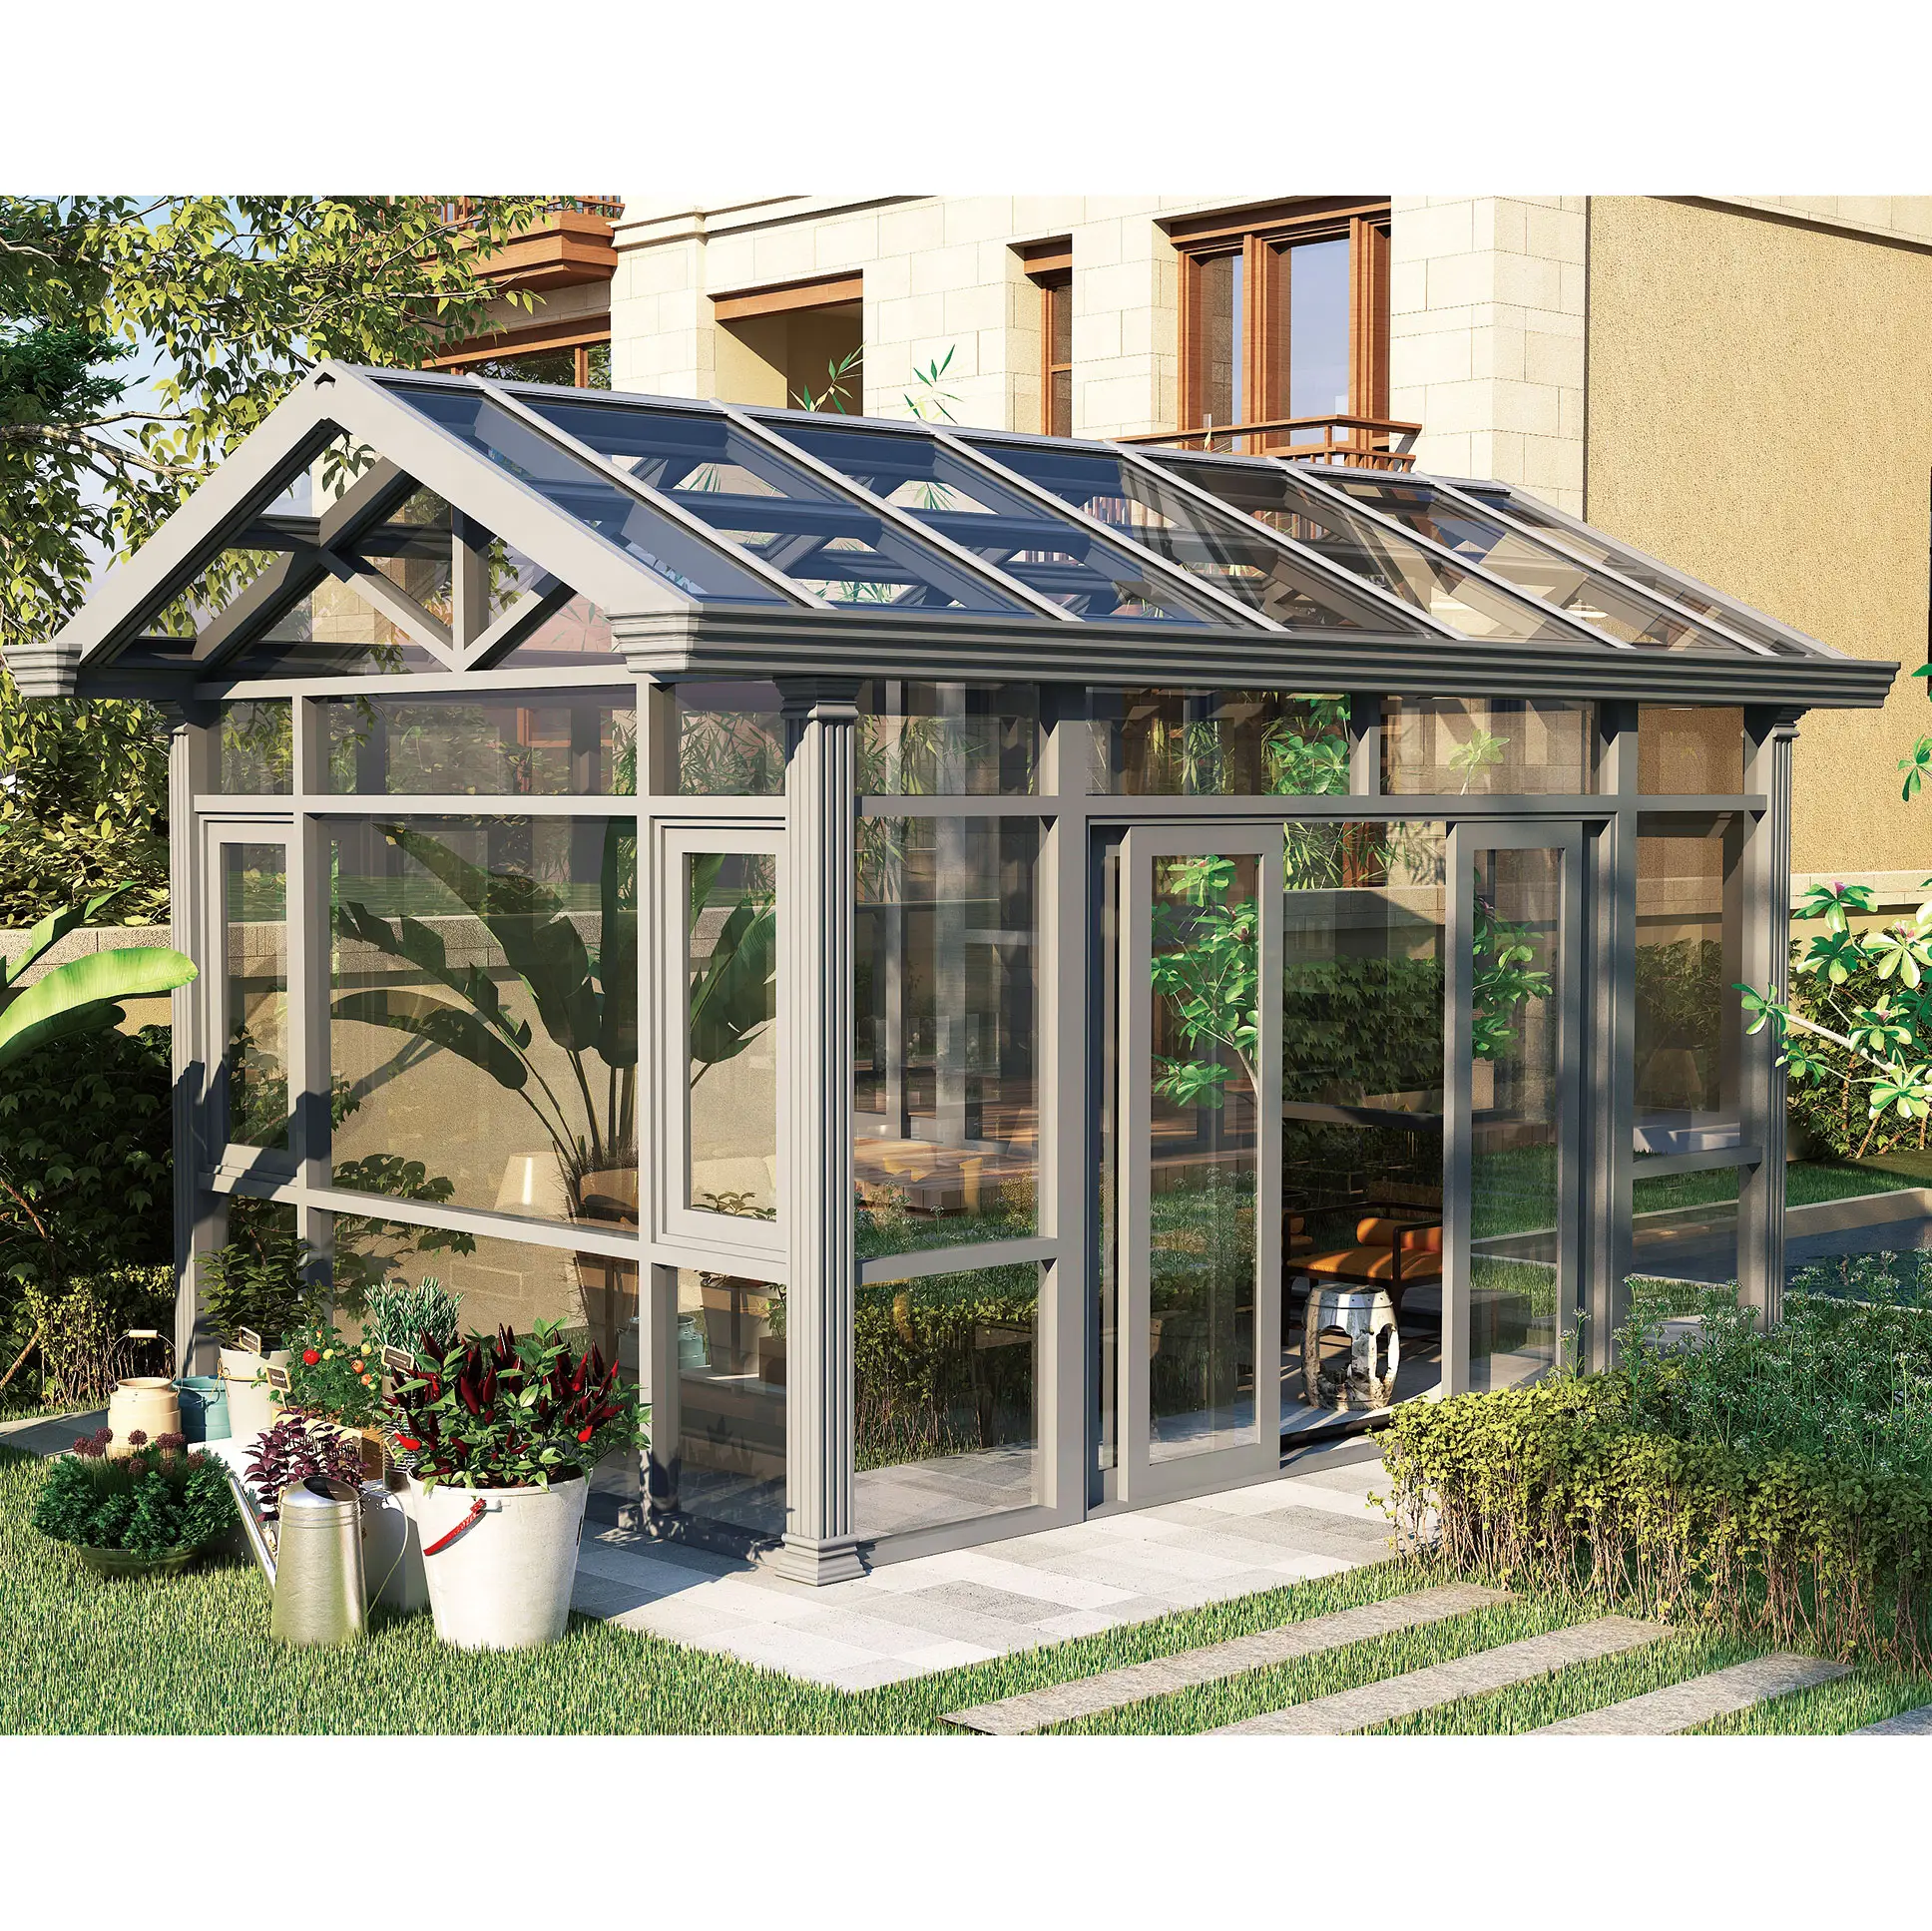 Modularer Wintergarten aus Glas im europäischen Stil Moderner Außenbereich Garten Patio Almuninm Alloy Glass Sun Room